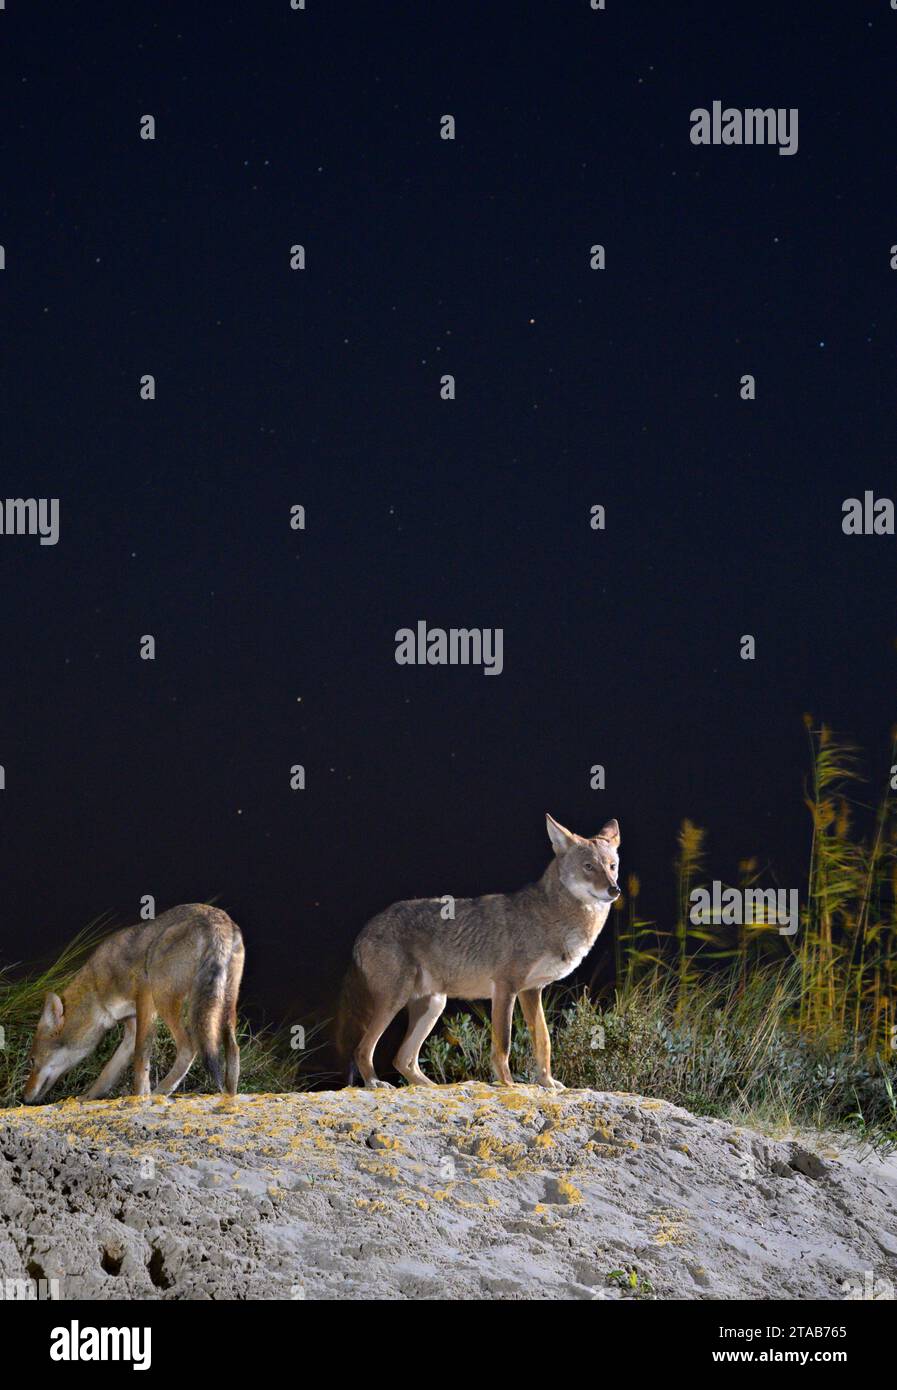 Kojoten (Canis latrans) auf der Sanddüne bei Nacht unter Sternenhimmel, Galveston, Texas. Man nimmt an, dass diese Population Gene des Roten Wolfs (Canis rufus) besitzt. Stockfoto